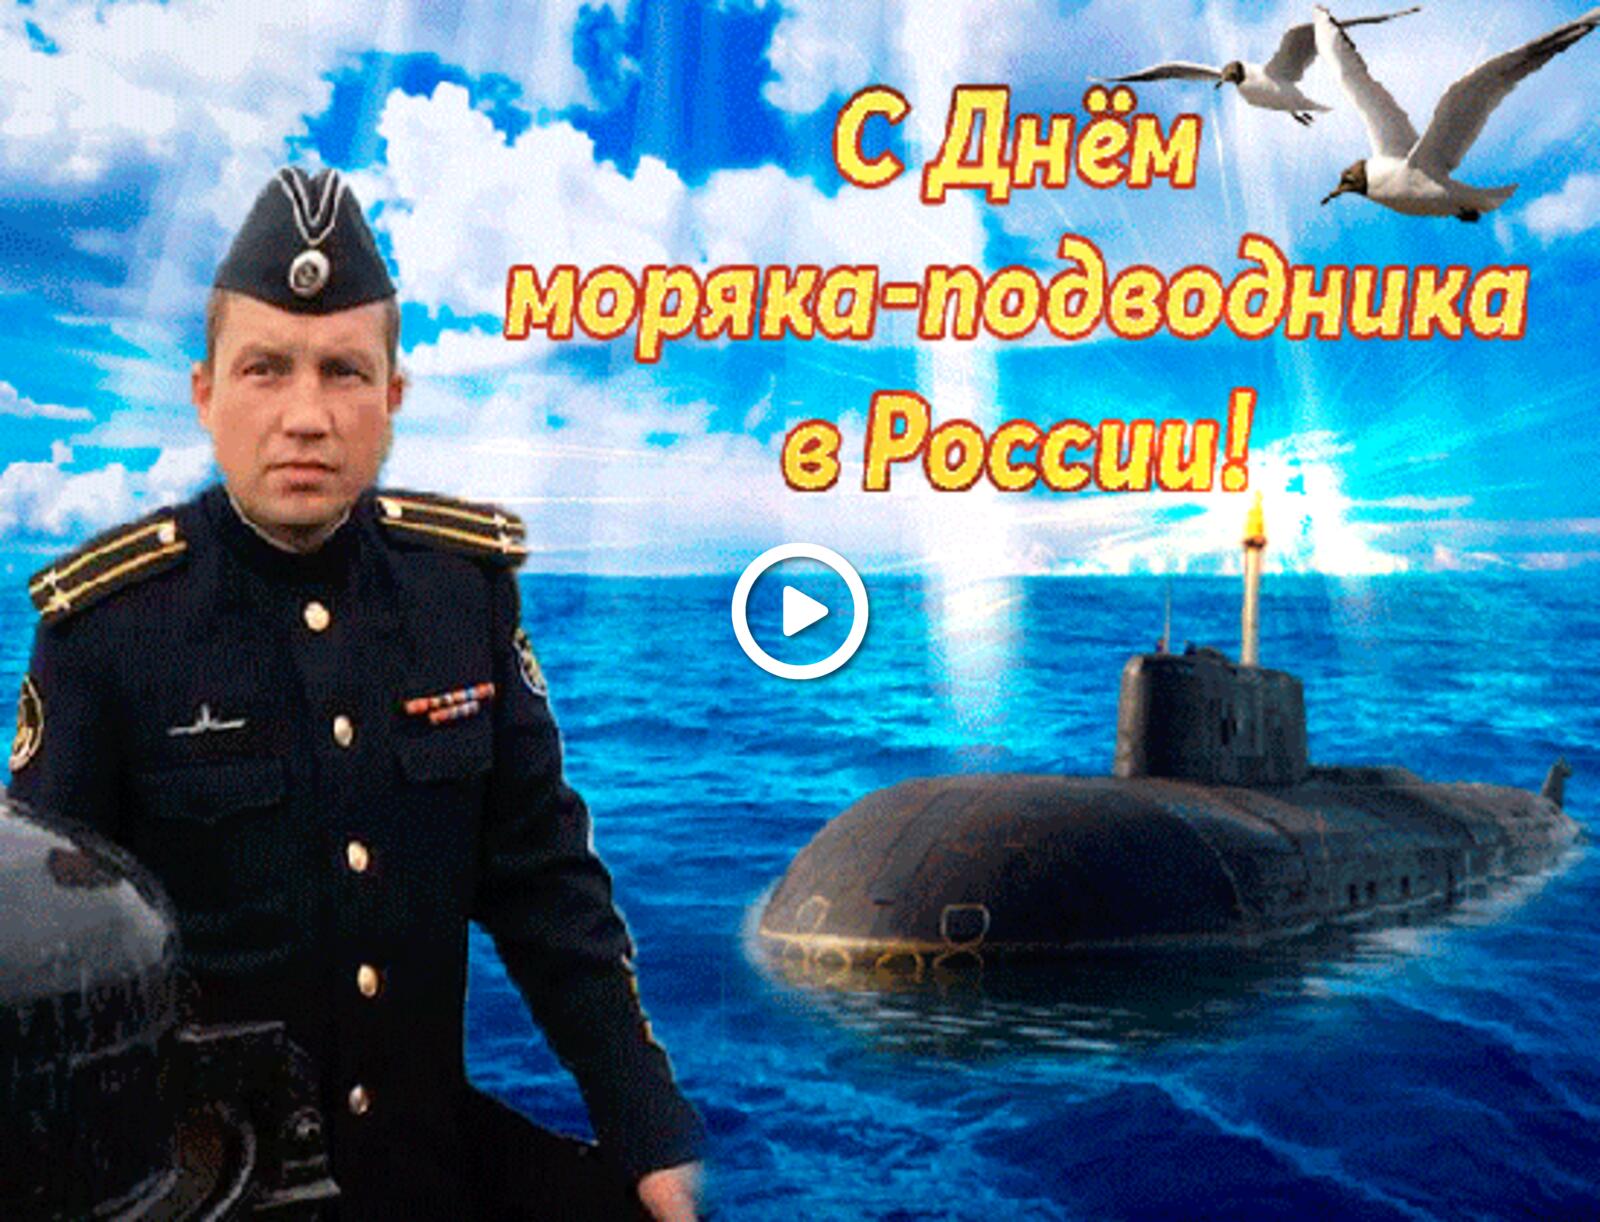 Открытка на тему день моряка - подводника праздники корабль бесплатно